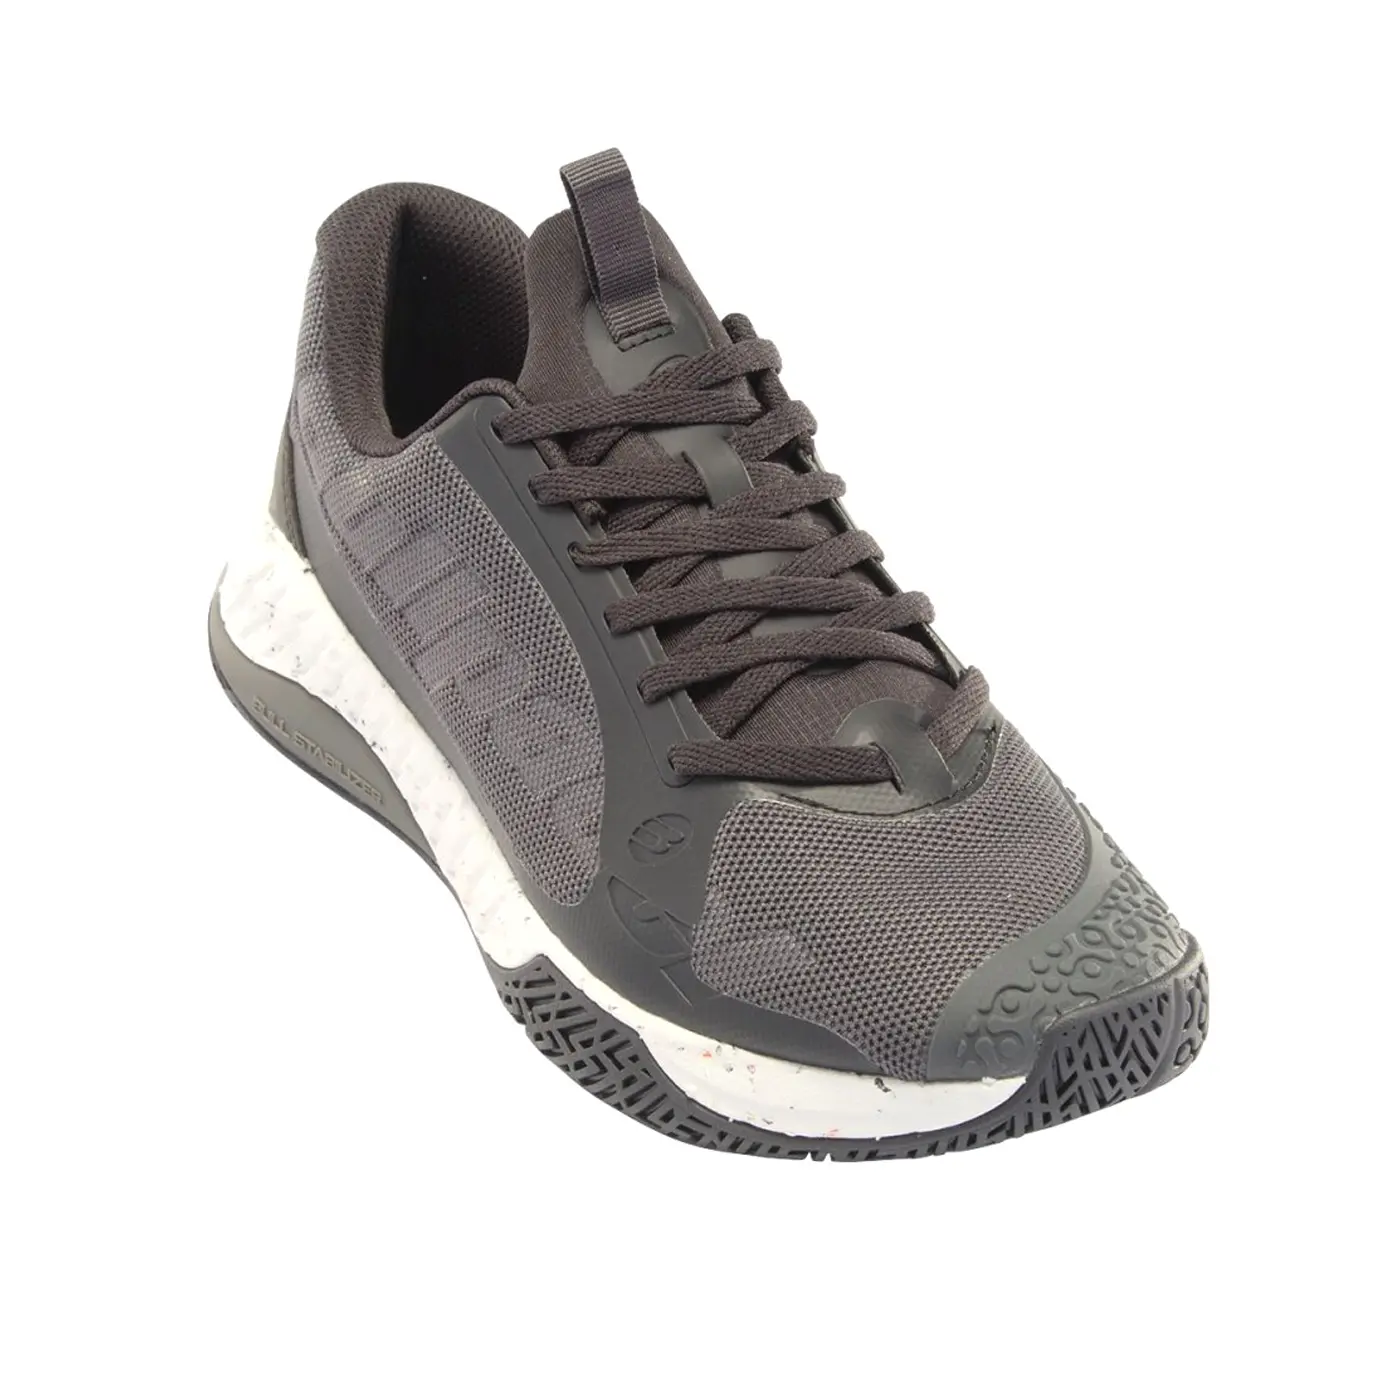 Bullpadel Comfort Pro 23I Men's Padel Shoes